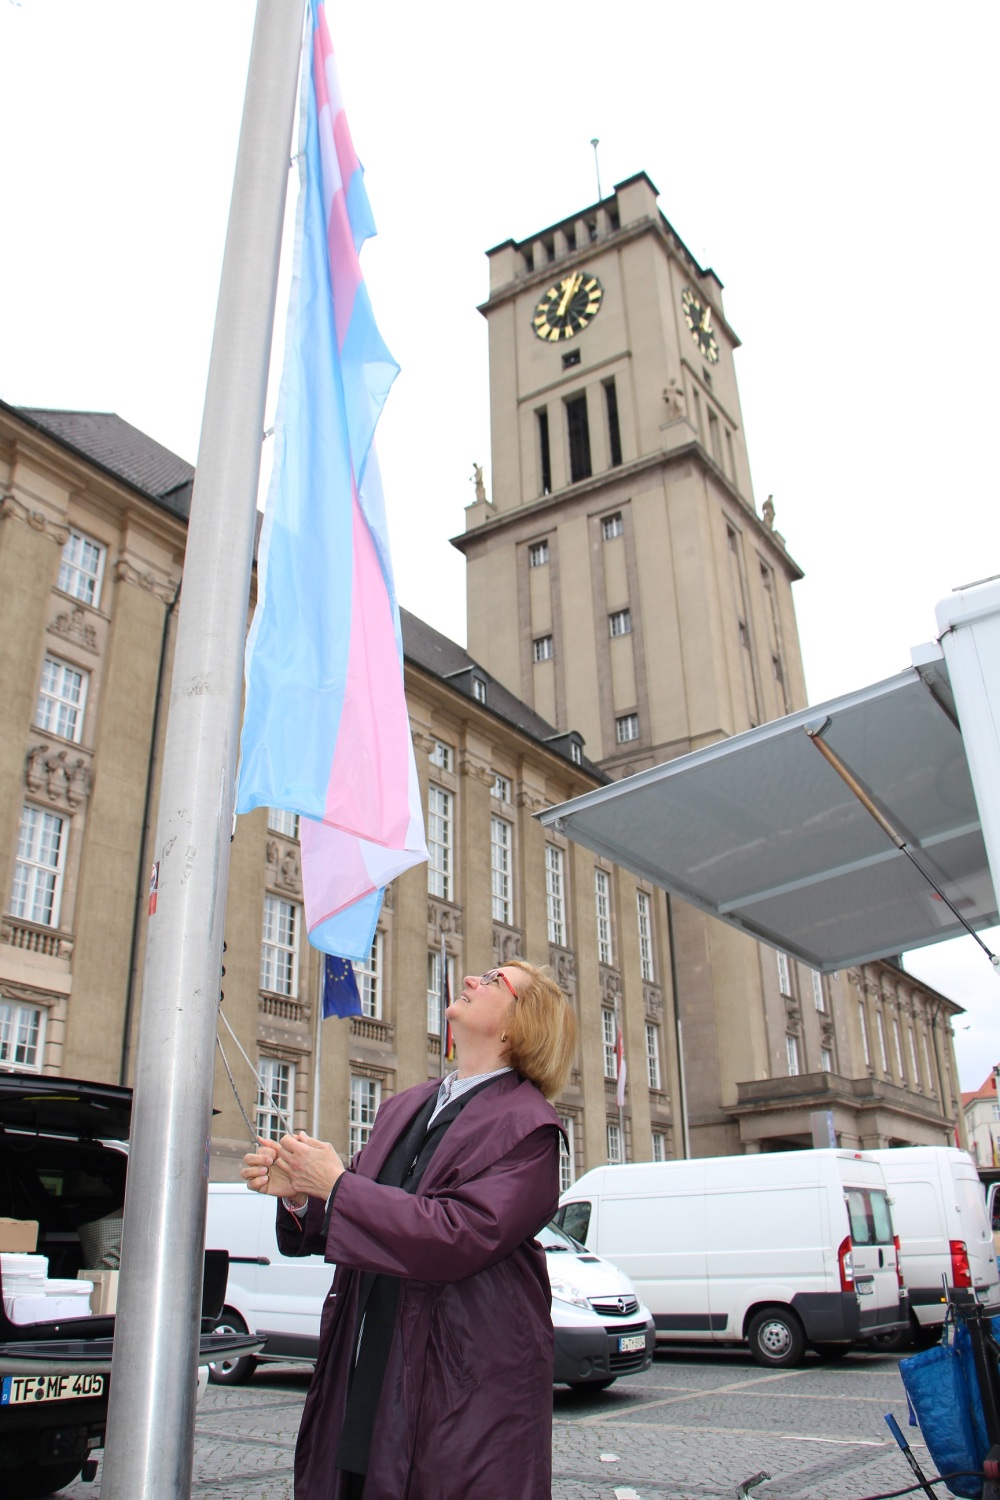 Eine Frau hisst vor einem großen Gebäude mit Uhrenturm eine blau-rosa-weiß-gestreifte Flagge.